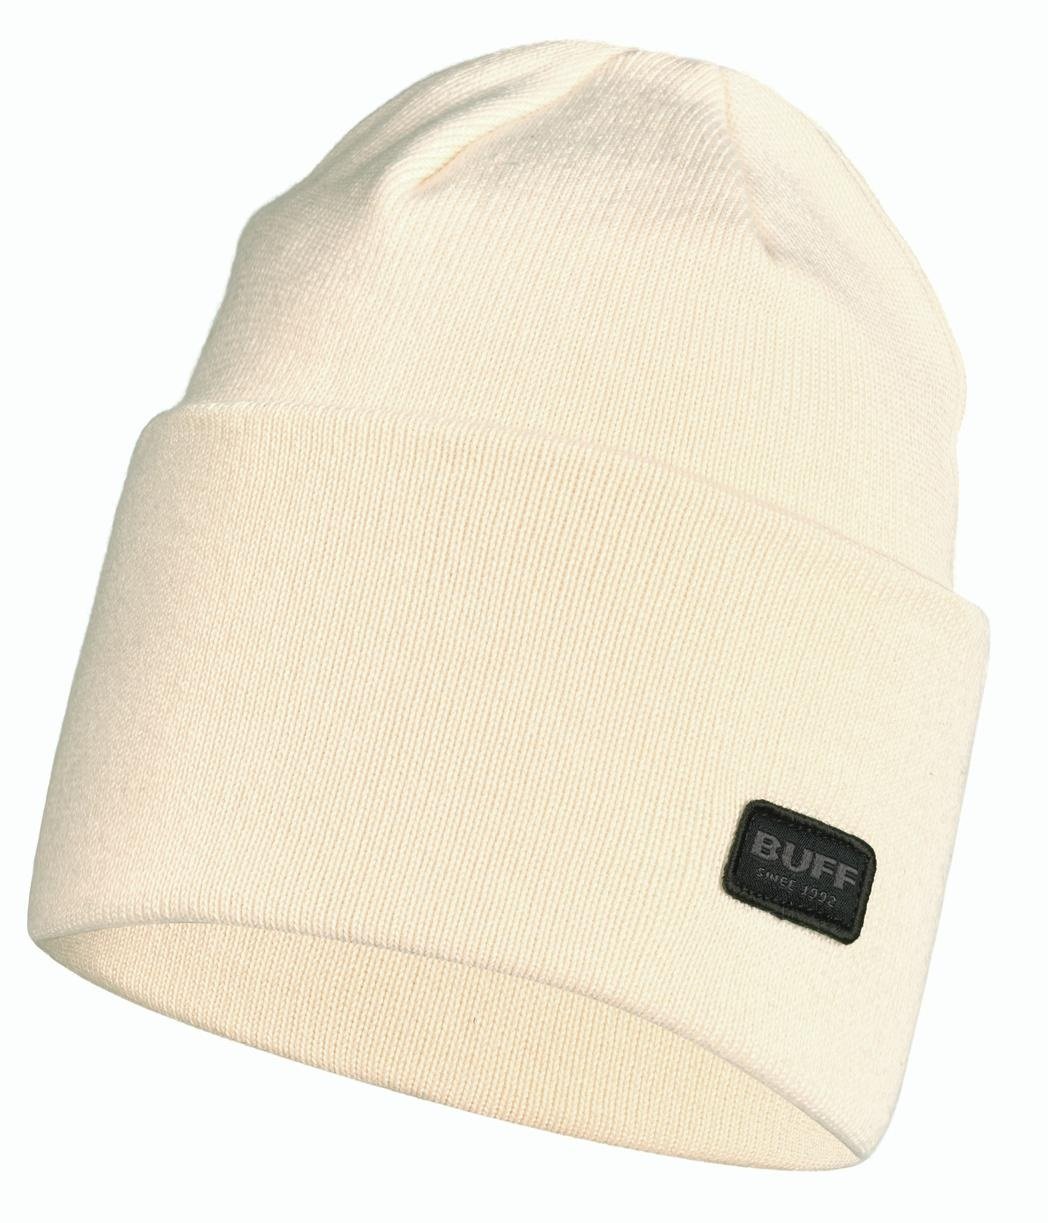 Шапка Buff Knitted Hat Niels Cru US:One size, 126457.014.10.00 купить на ЖДБЗ.ру